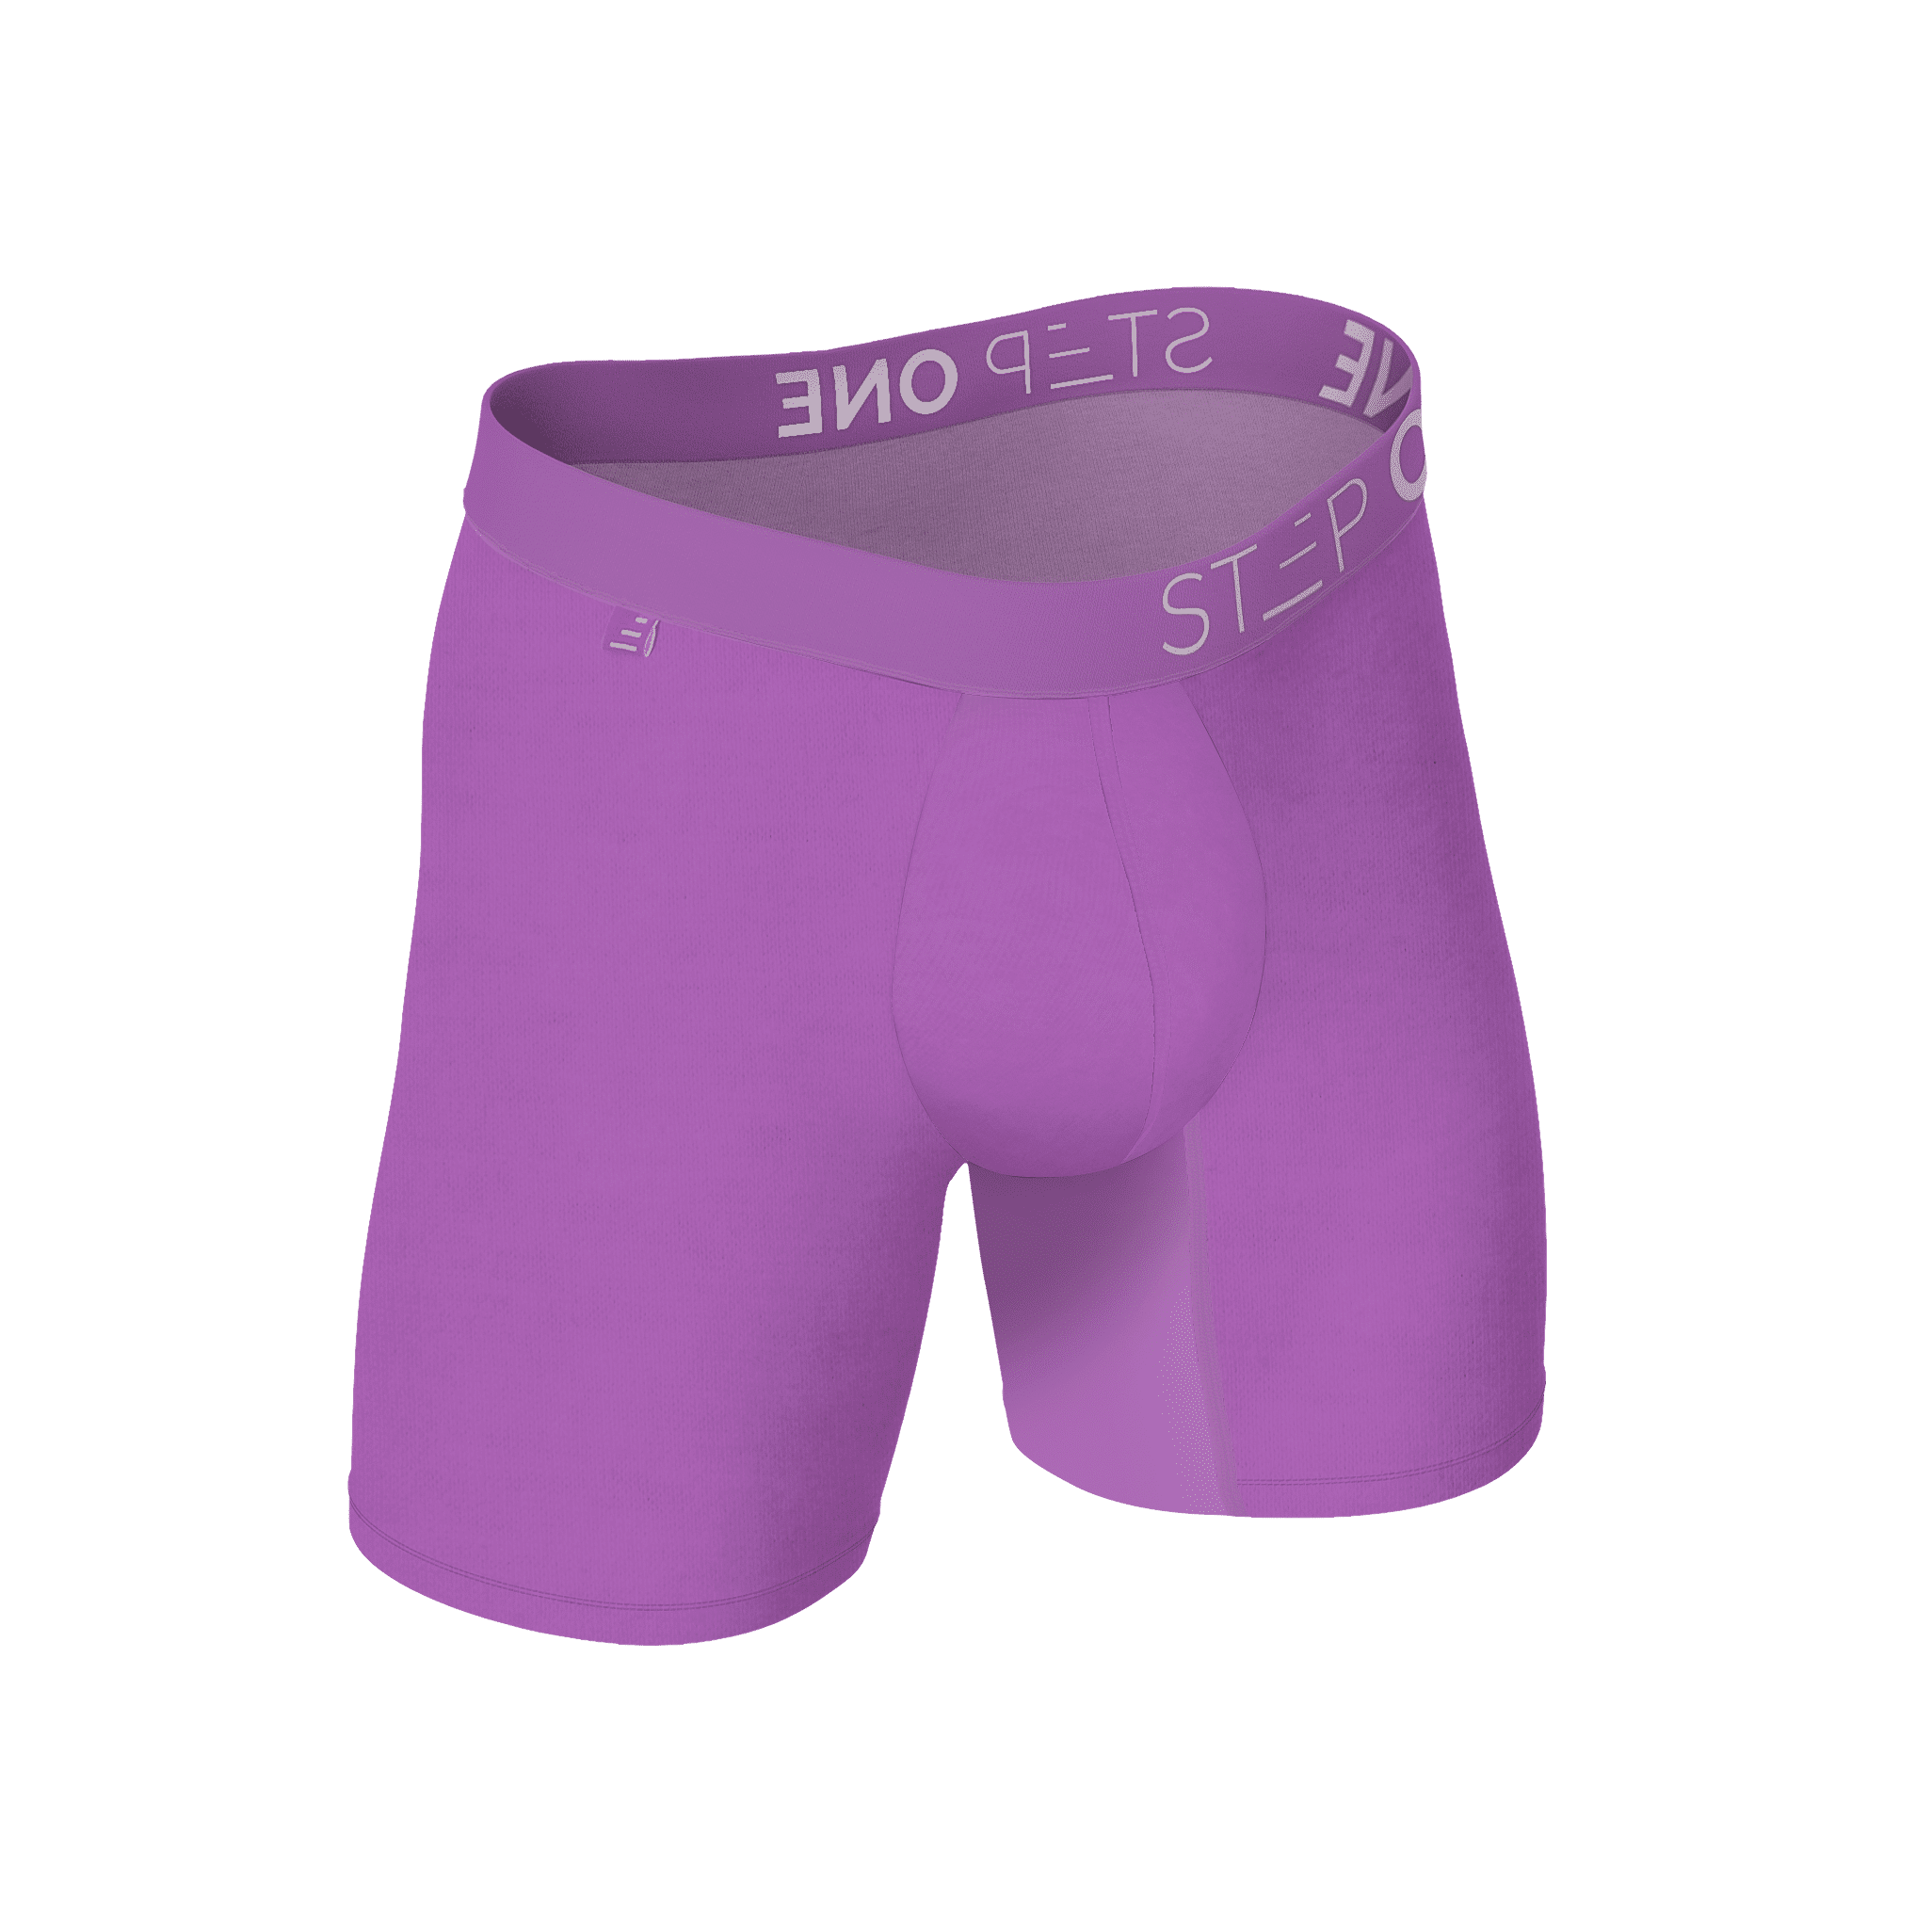  Buy Men's Underwear Online at Step One US